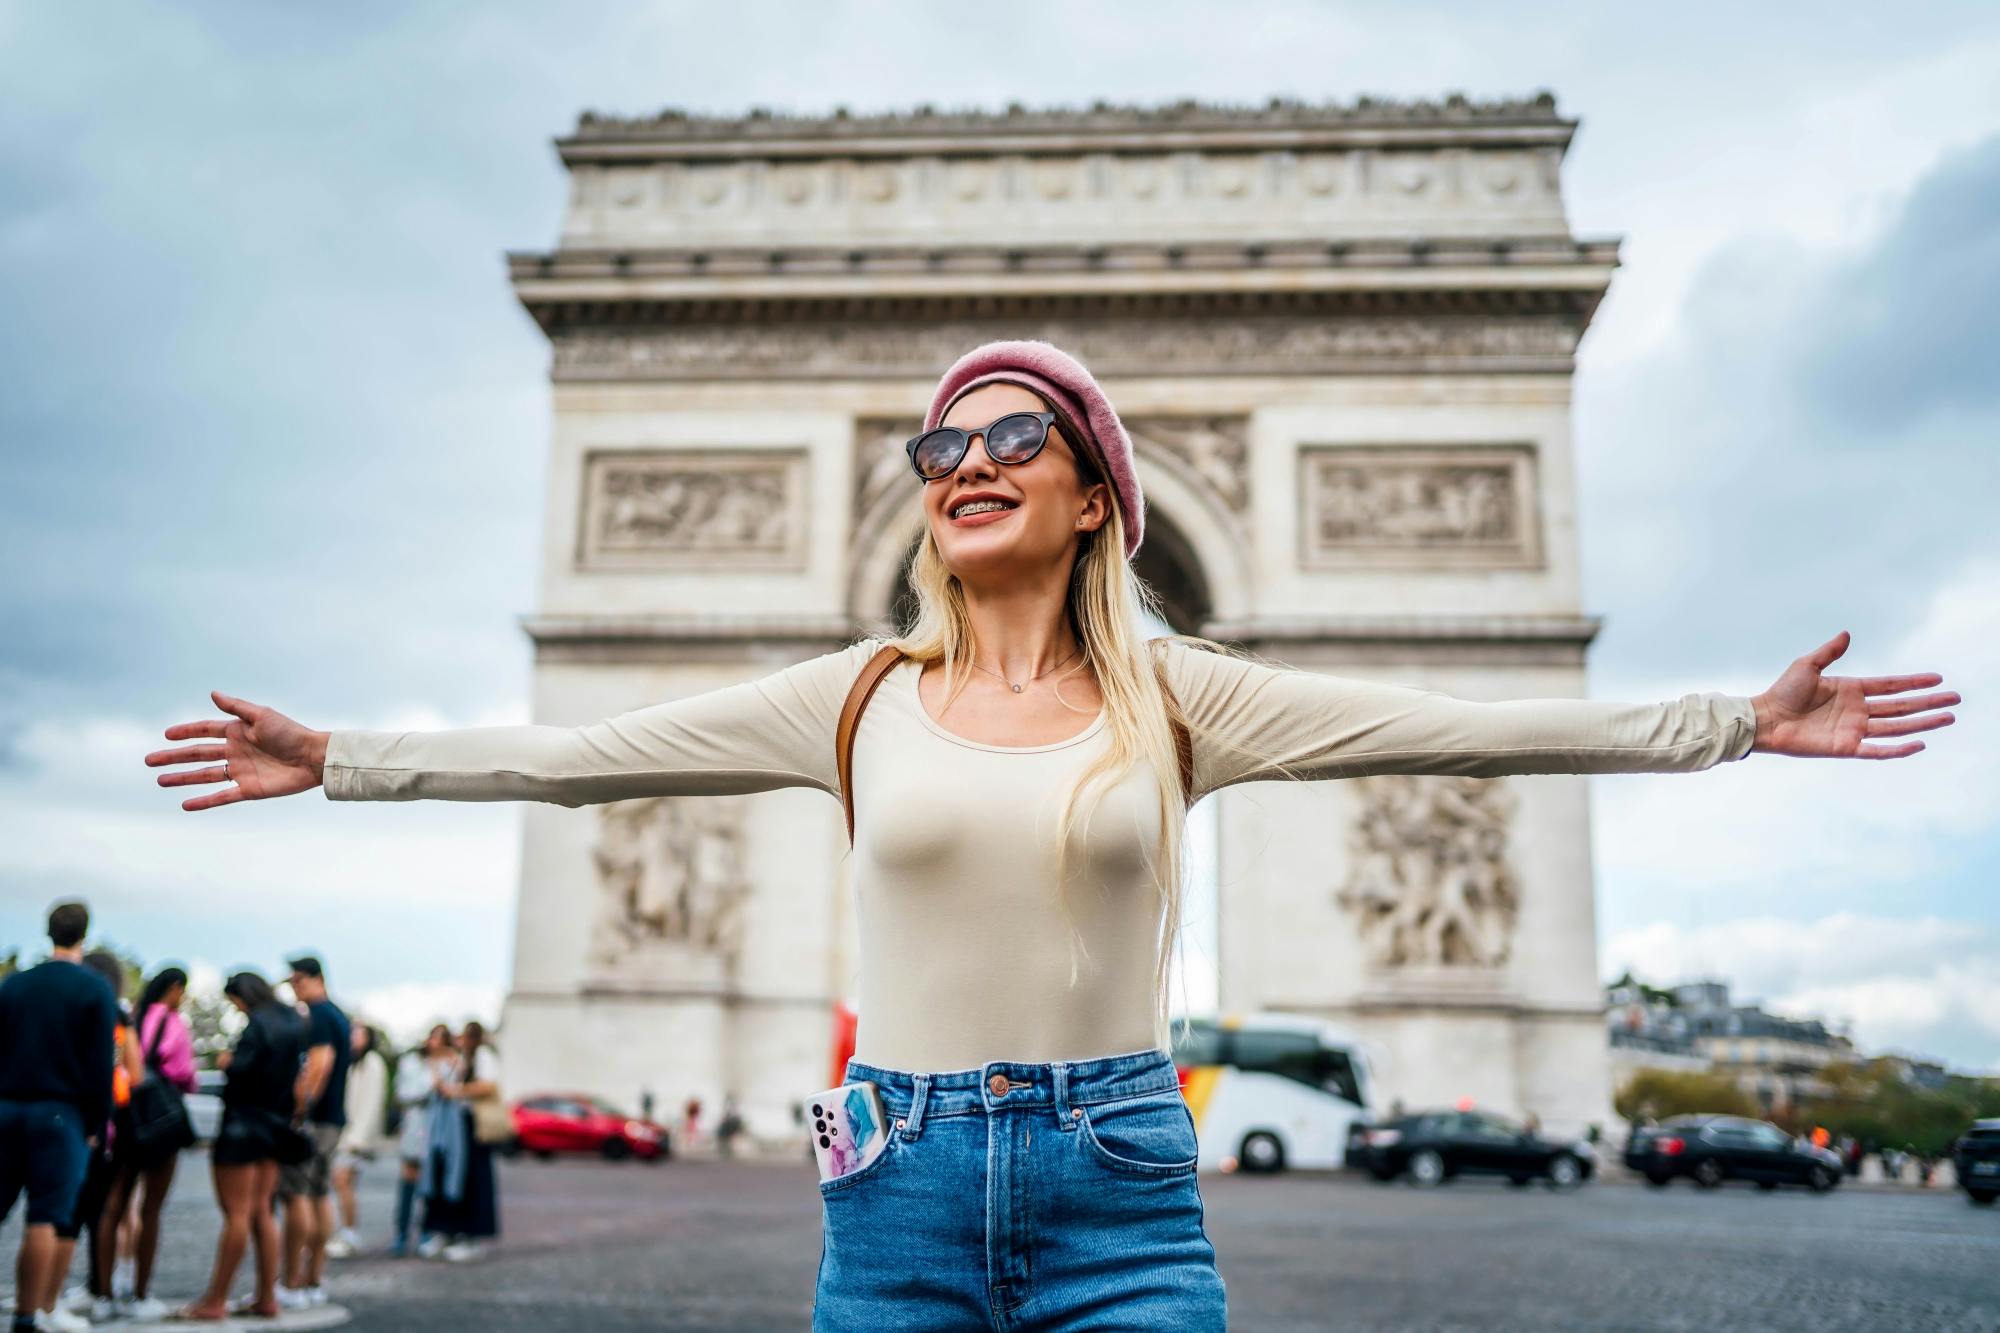 Parijs Photoshoot Tour The Big 3: Eiffeltoren, Arc de Triomph en Seine